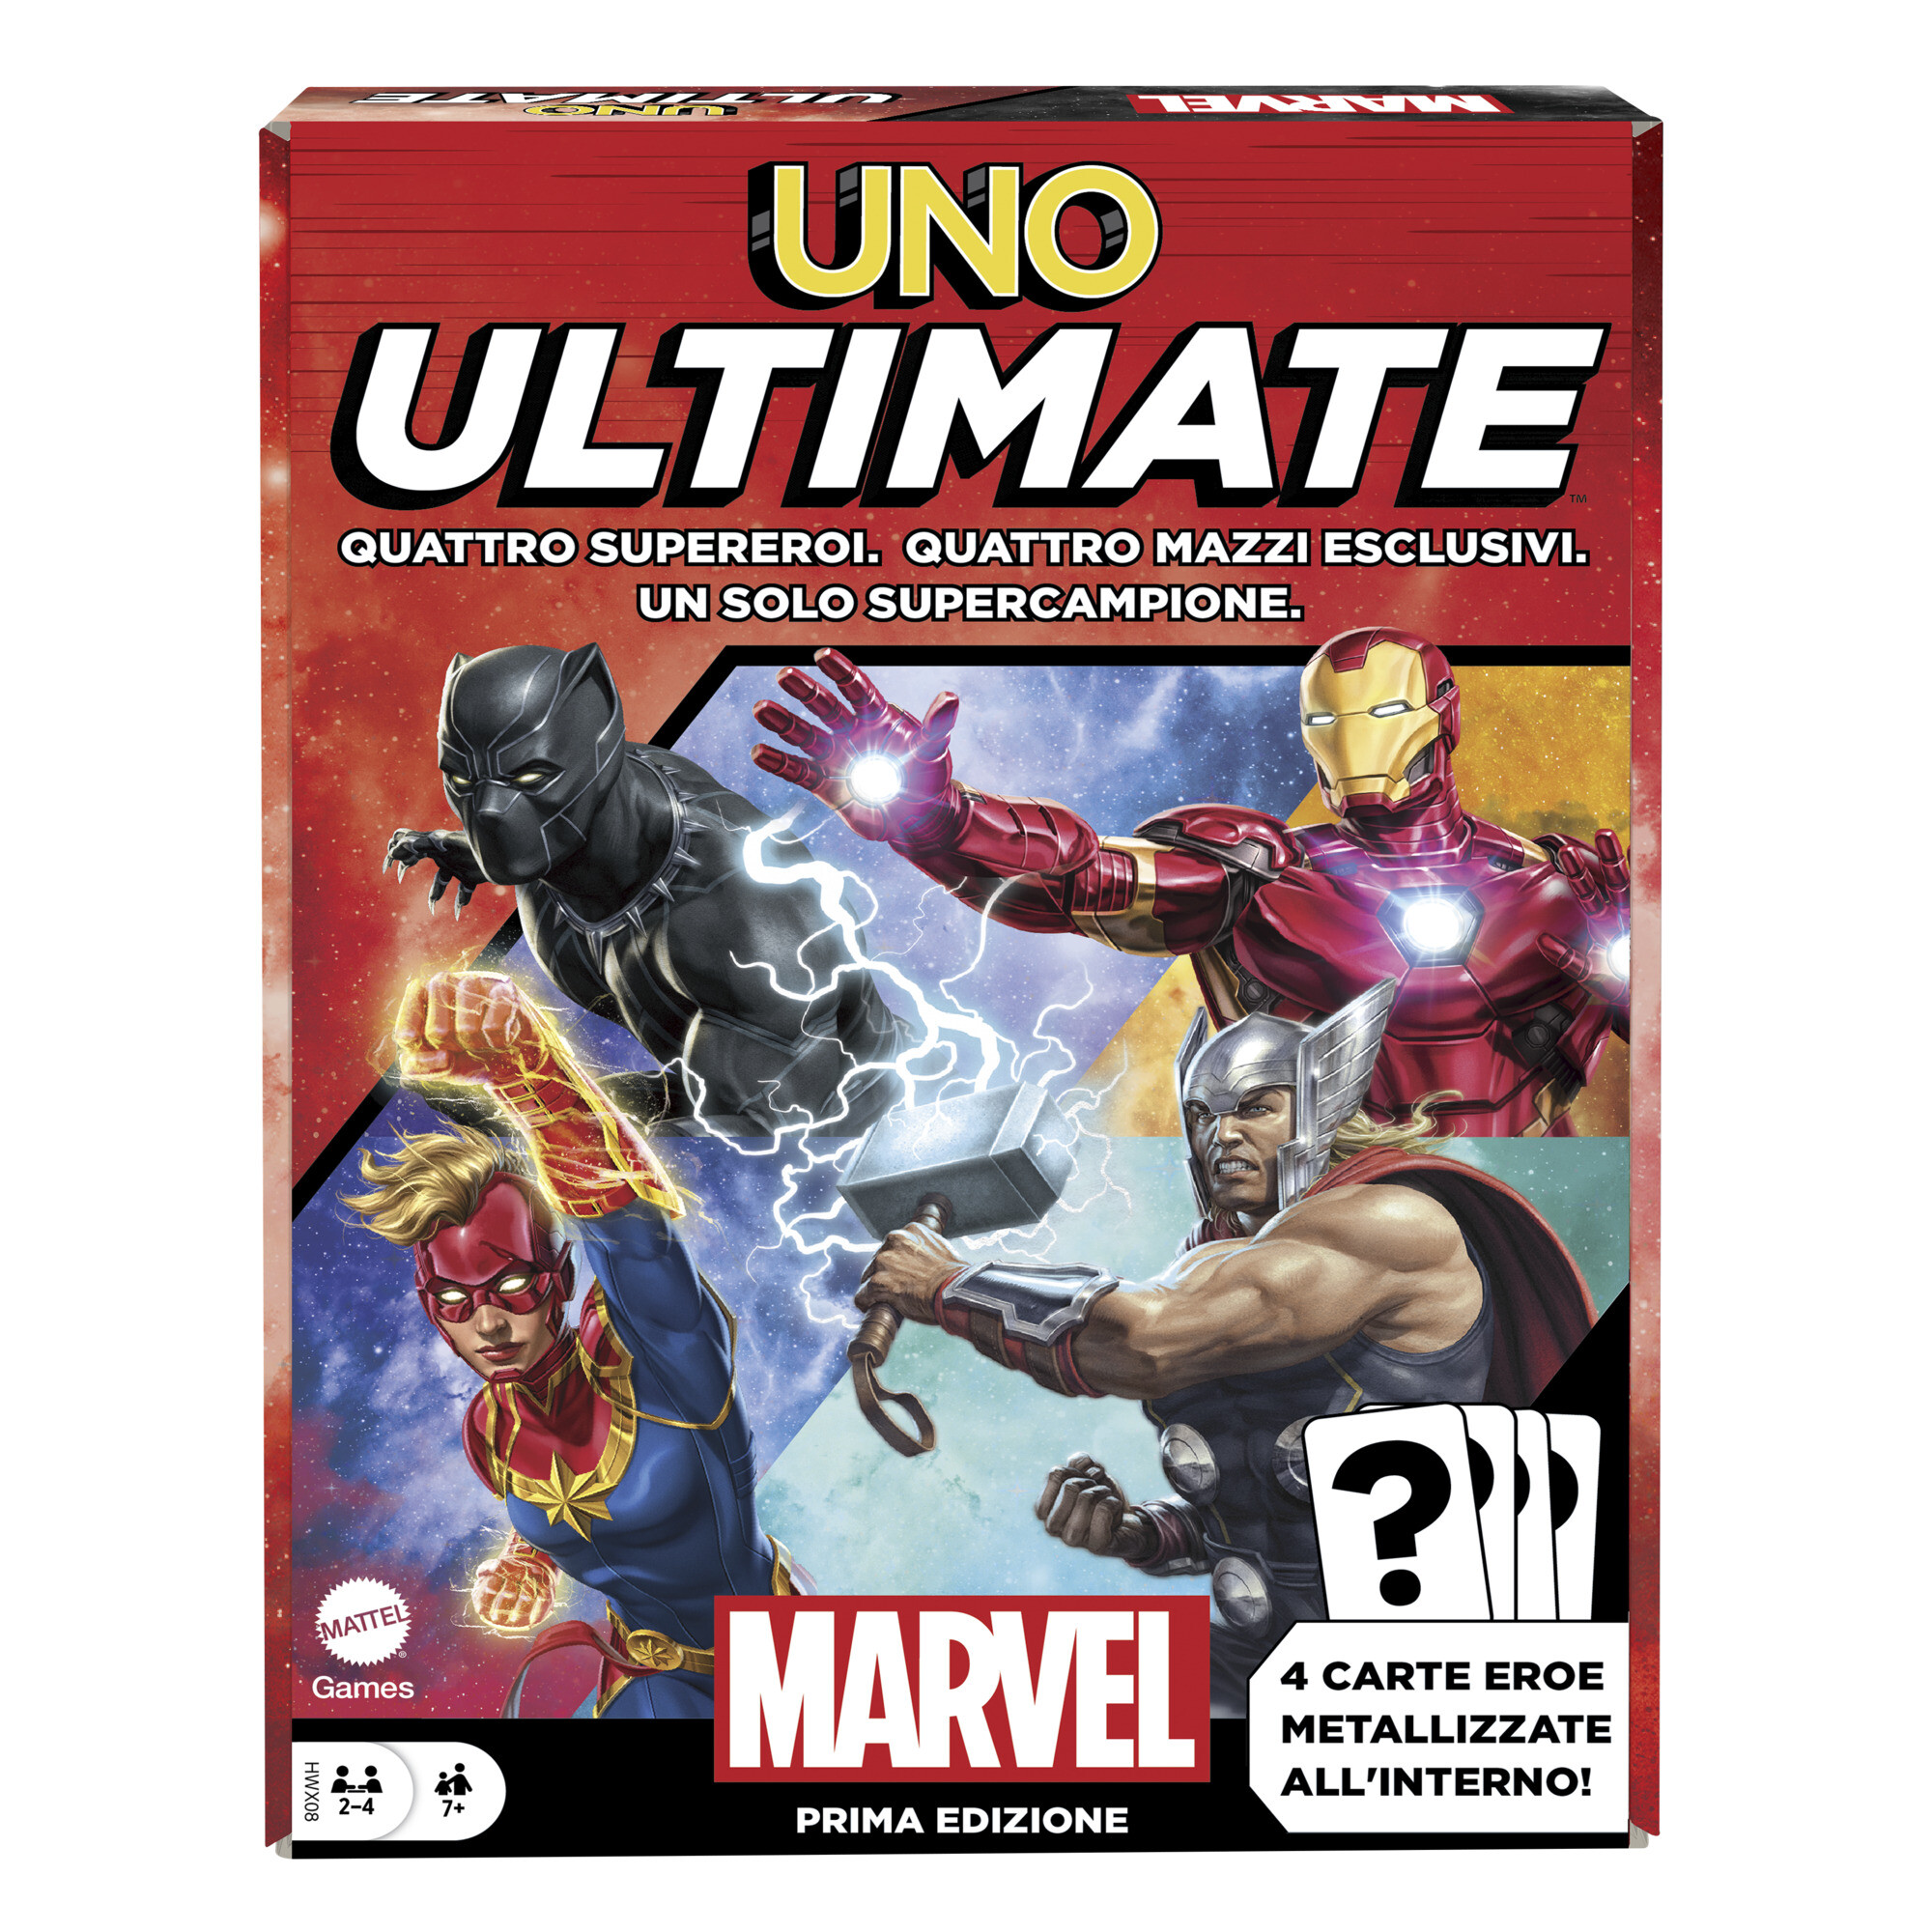 Uno ultimate, l'iconico gioco di carte con i supereroi marvel - MATTEL GAMES, UNO